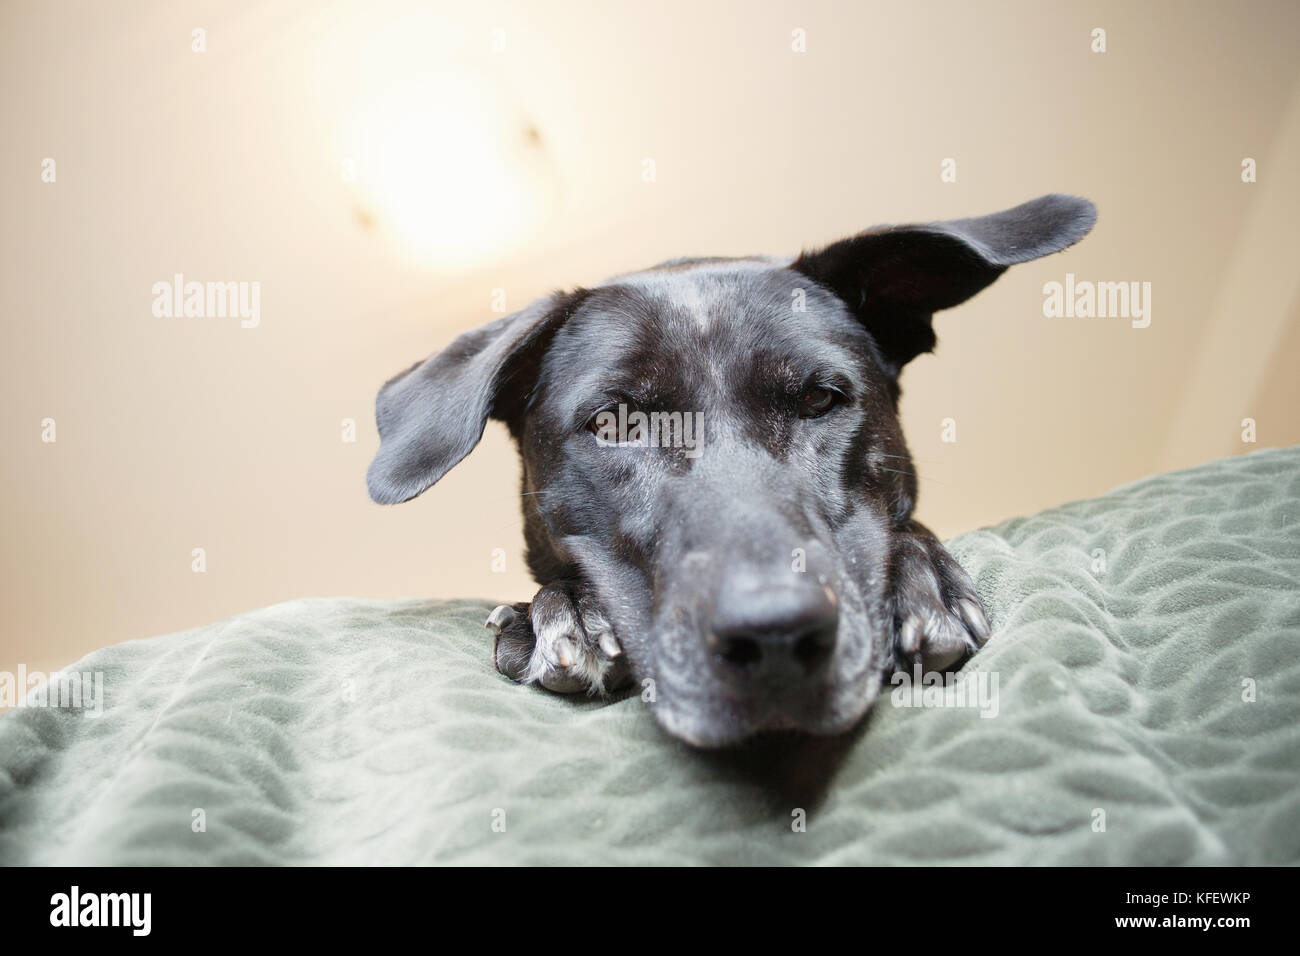 Big Dog on bed. Banque D'Images